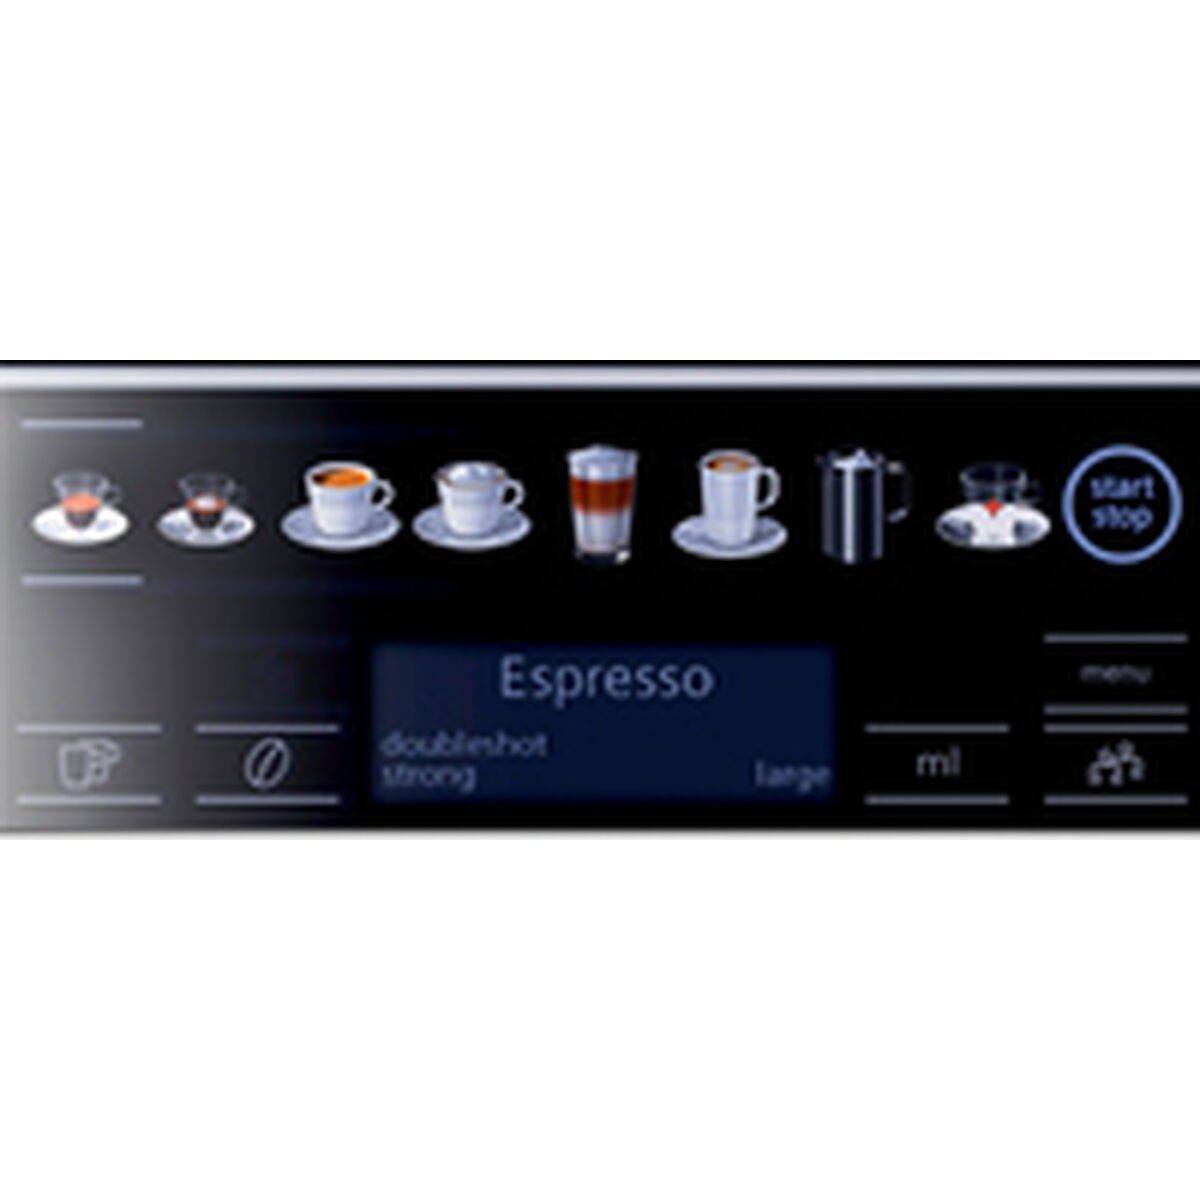 15 Kaffeevollautomat Siemens AG 1500 W bar SIEMENS s100 Kaffeemaschine Superautomatische Schwarz